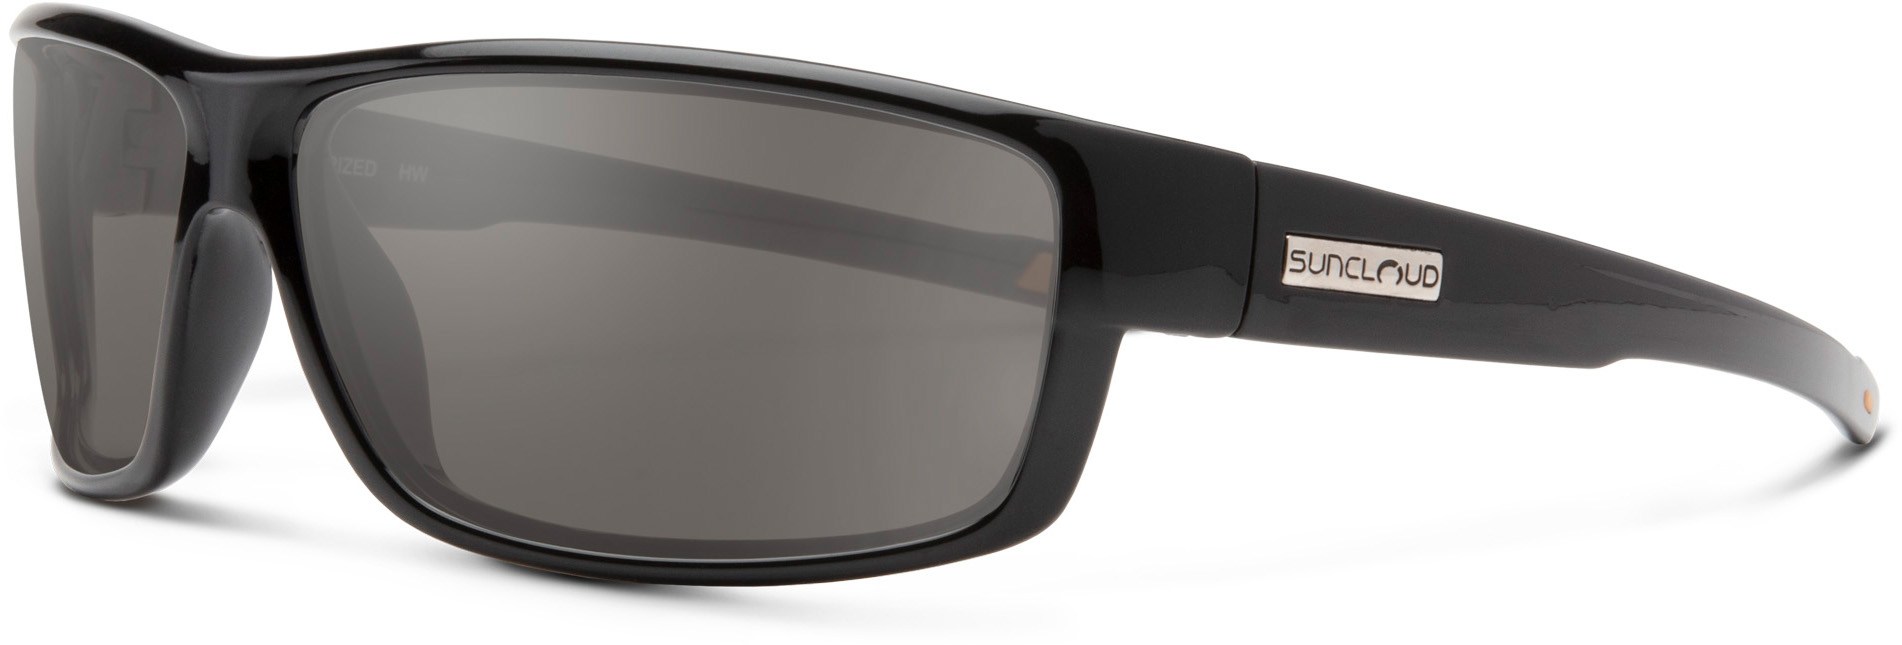 цена Ваучер на поляризационные солнцезащитные очки Suncloud, черный